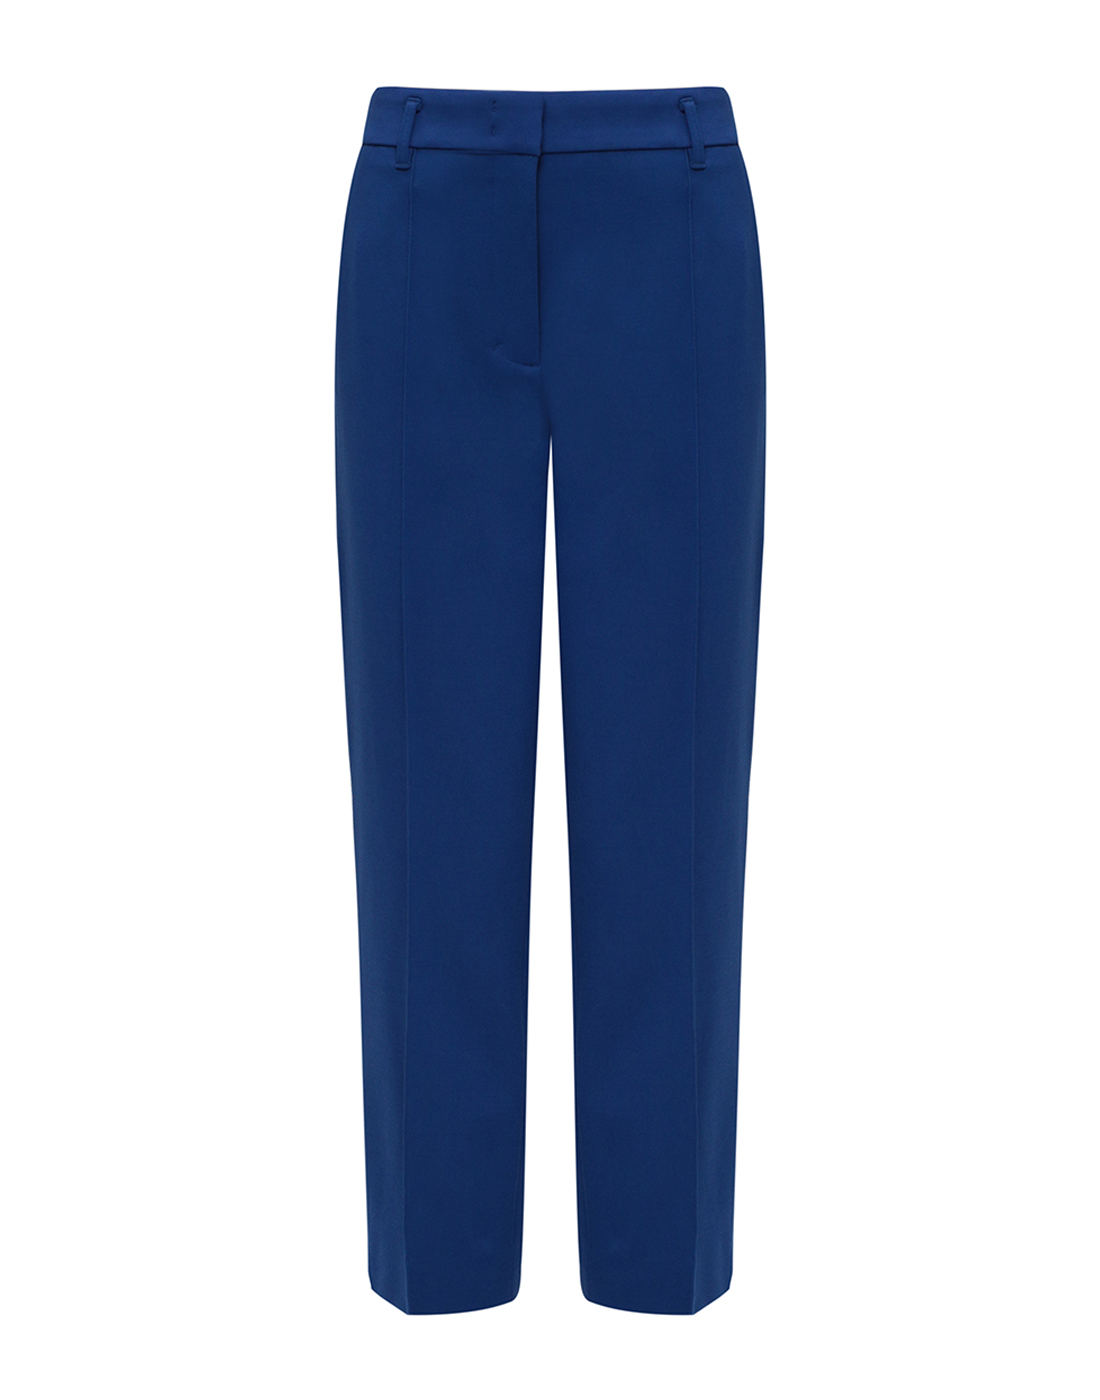 Женские синие брюки Dorothee Schumacher S548013/865-1